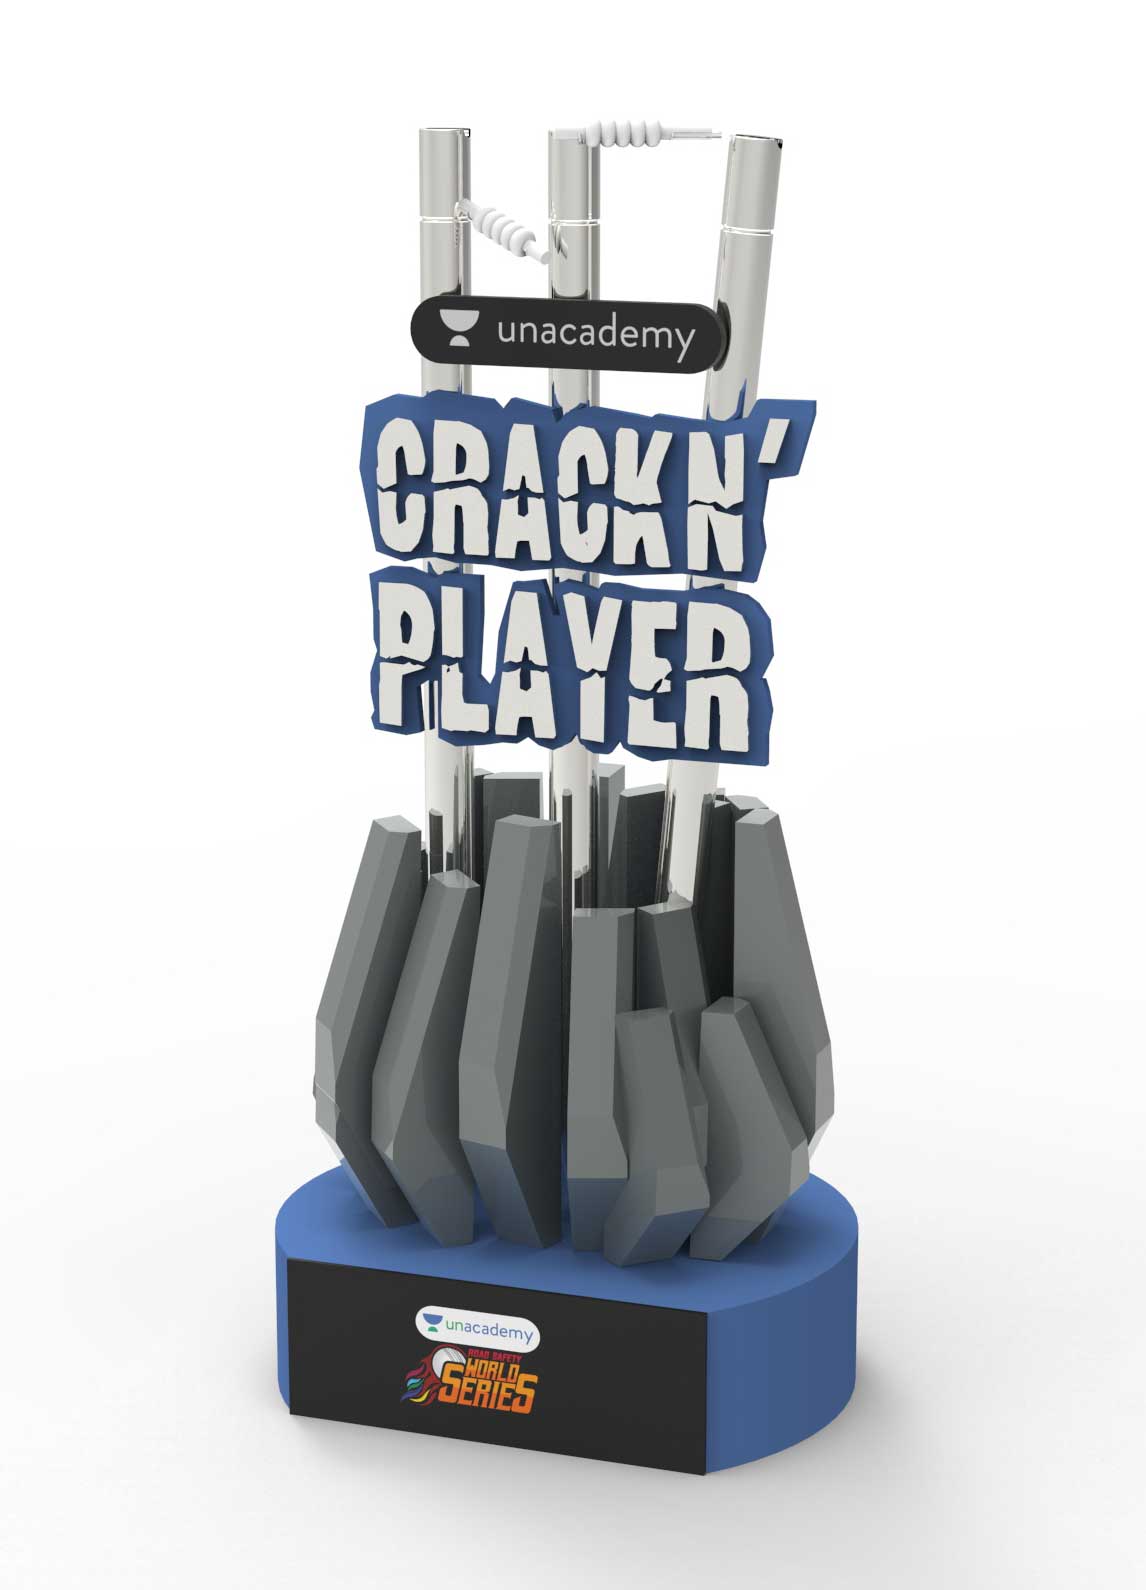 Unacademy Crackin' Player Trophy